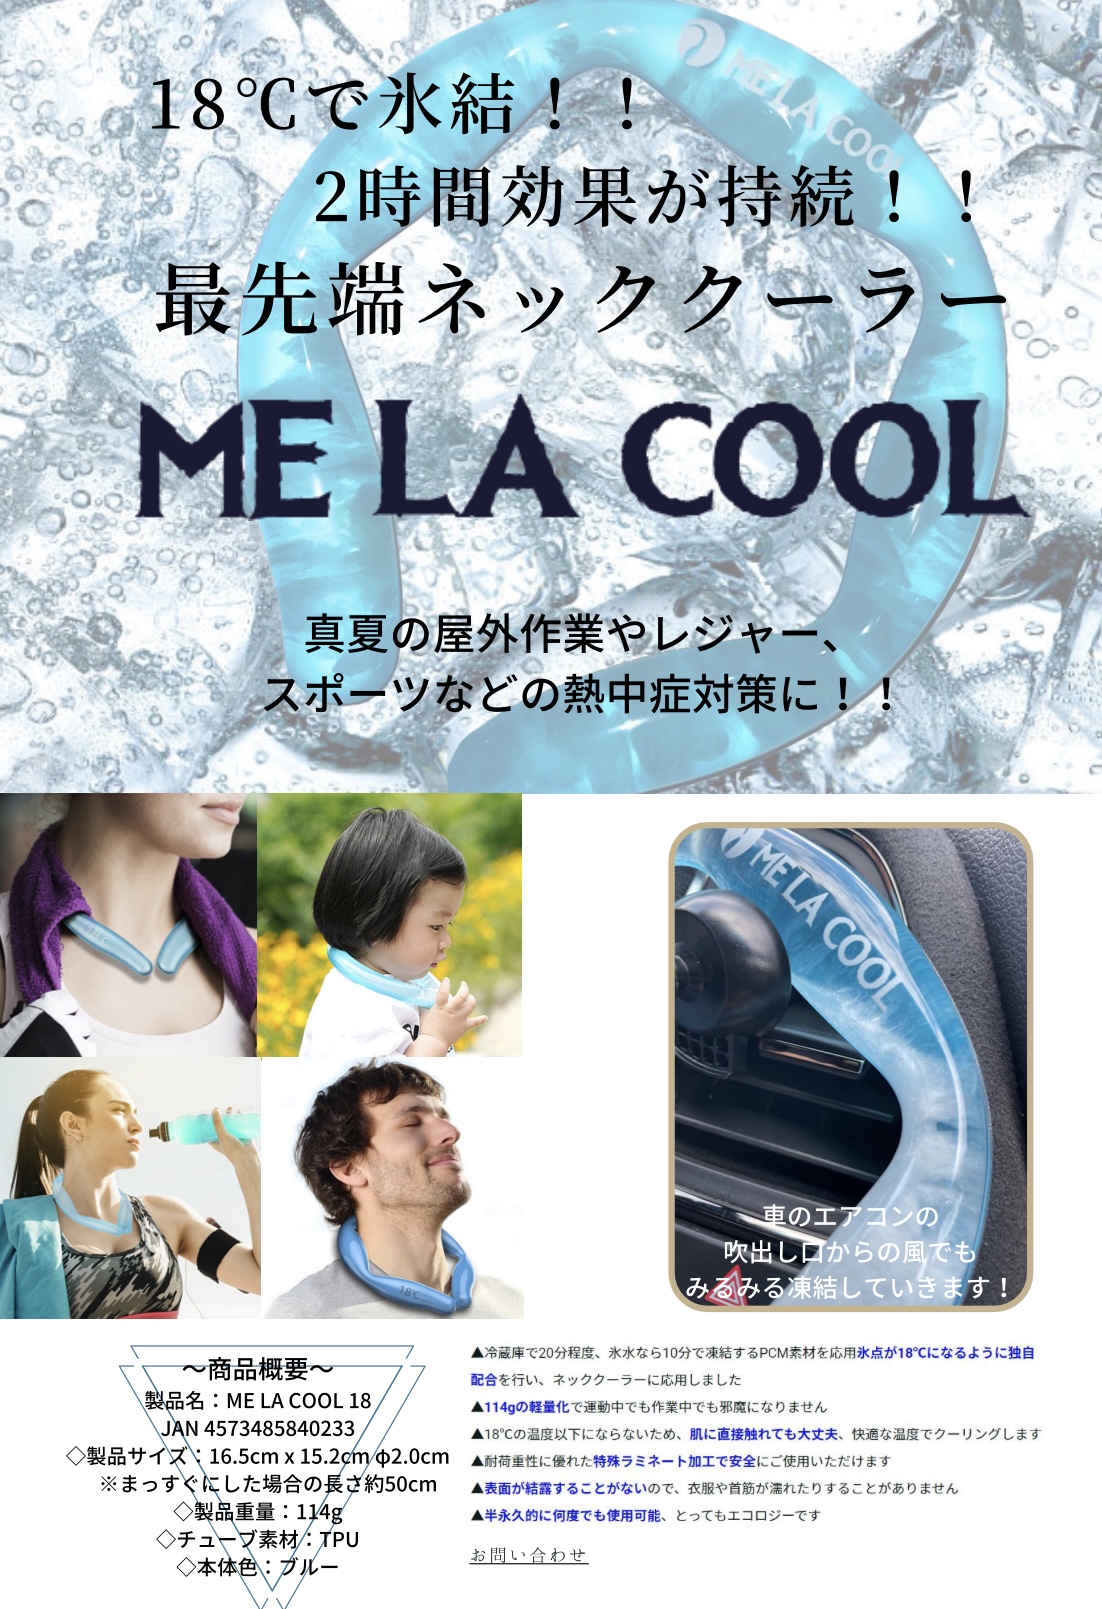 ❄️【新商品】新素材ネッククーラー『ME LA COOL』❄️